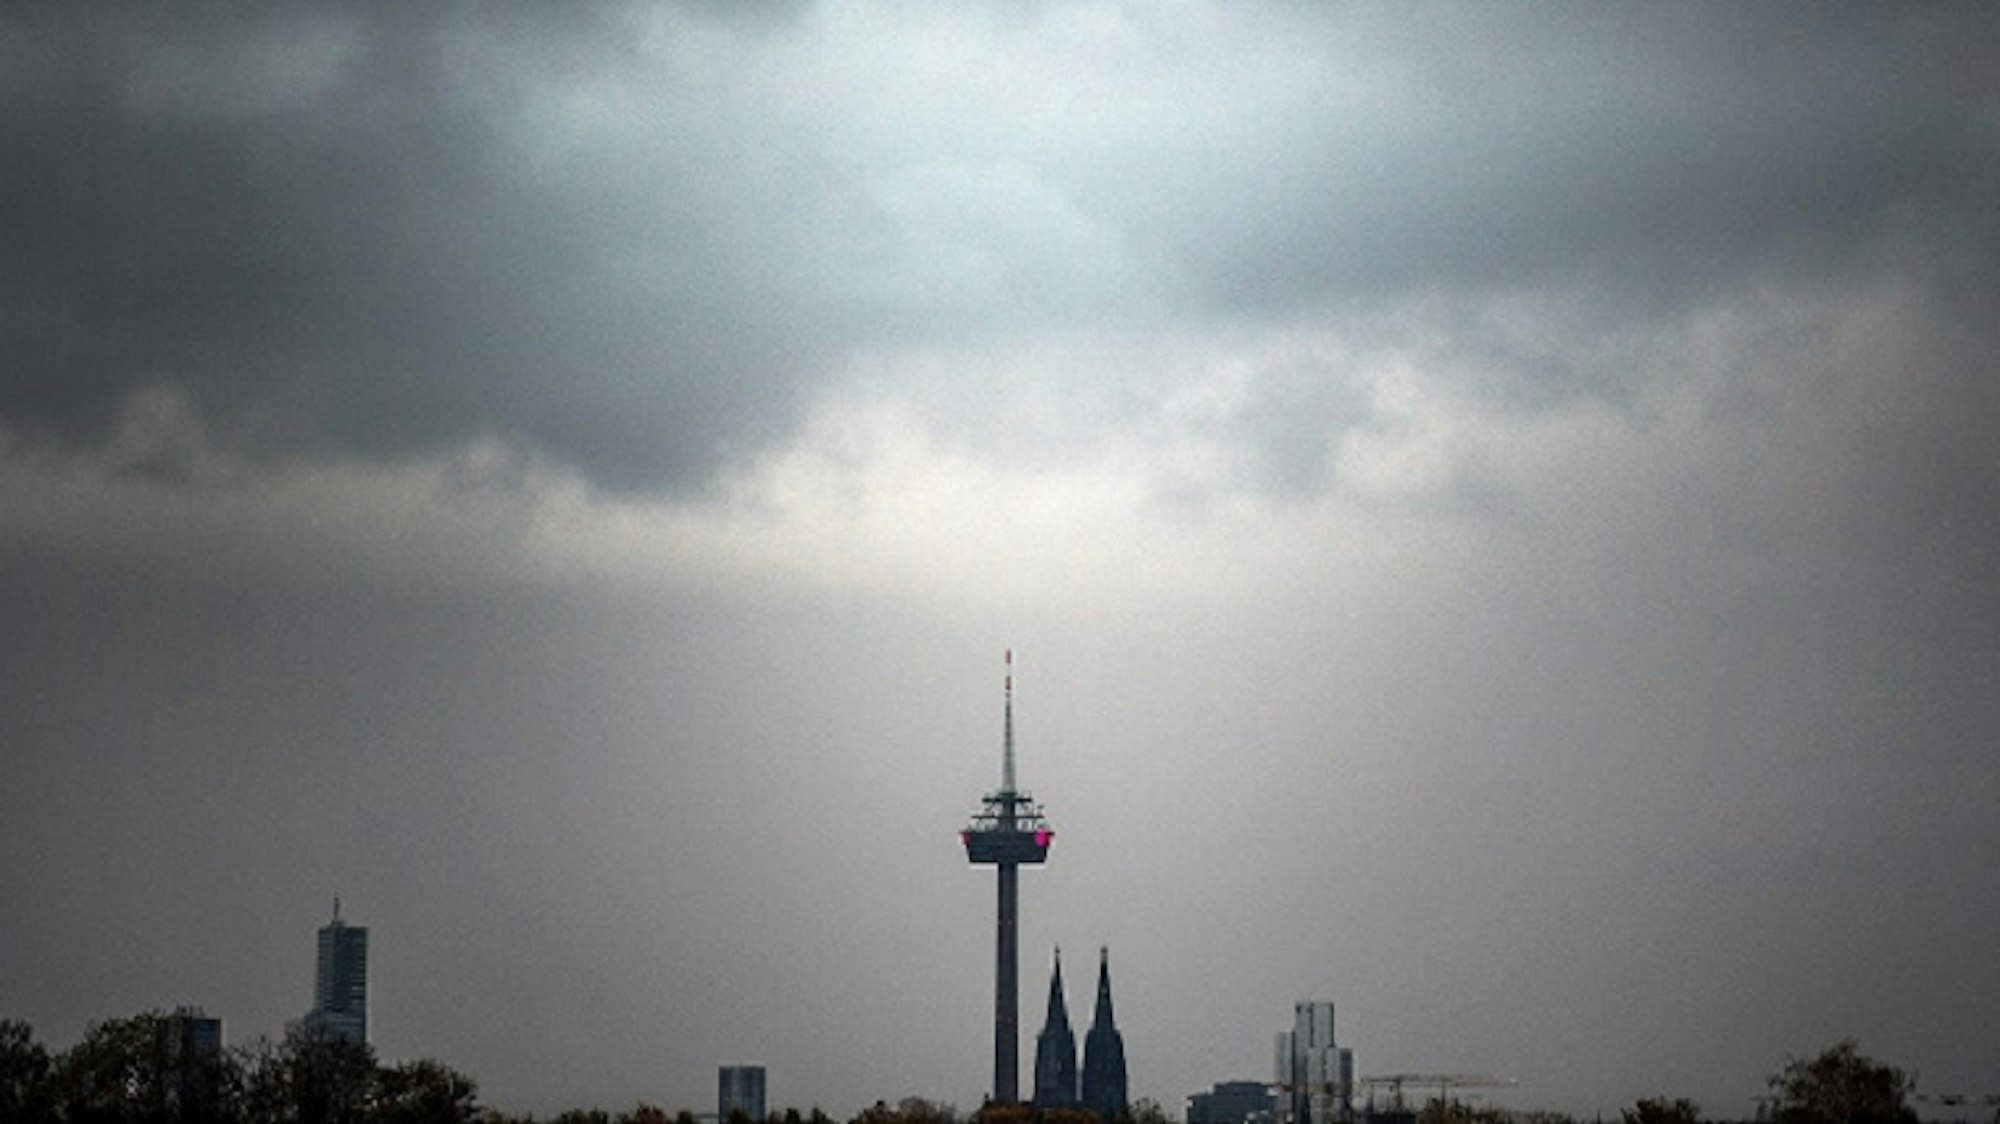 Wolken ziehen am Morgen über den Kölner Dom und den Fernsehturm.